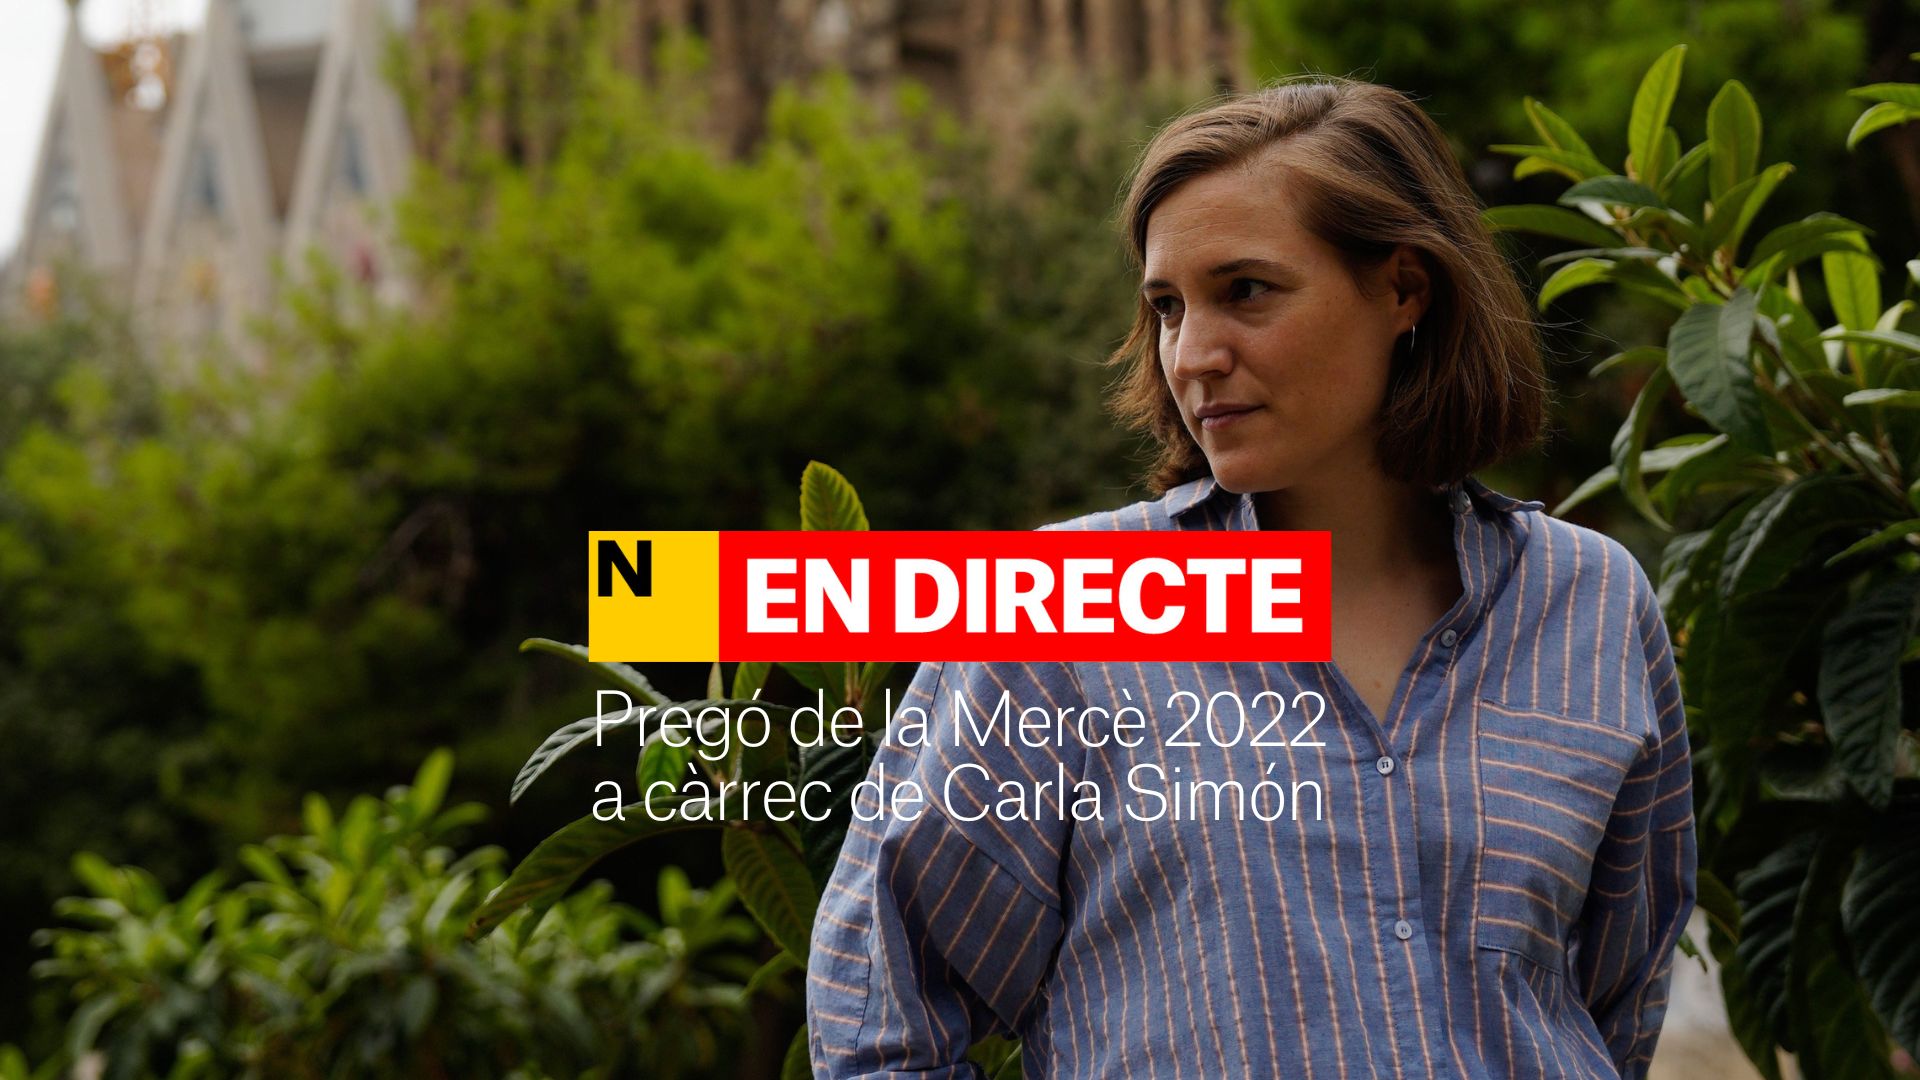 Pregó de la Mercè 2022 a càrrec de Carla Simón | DIRECTE